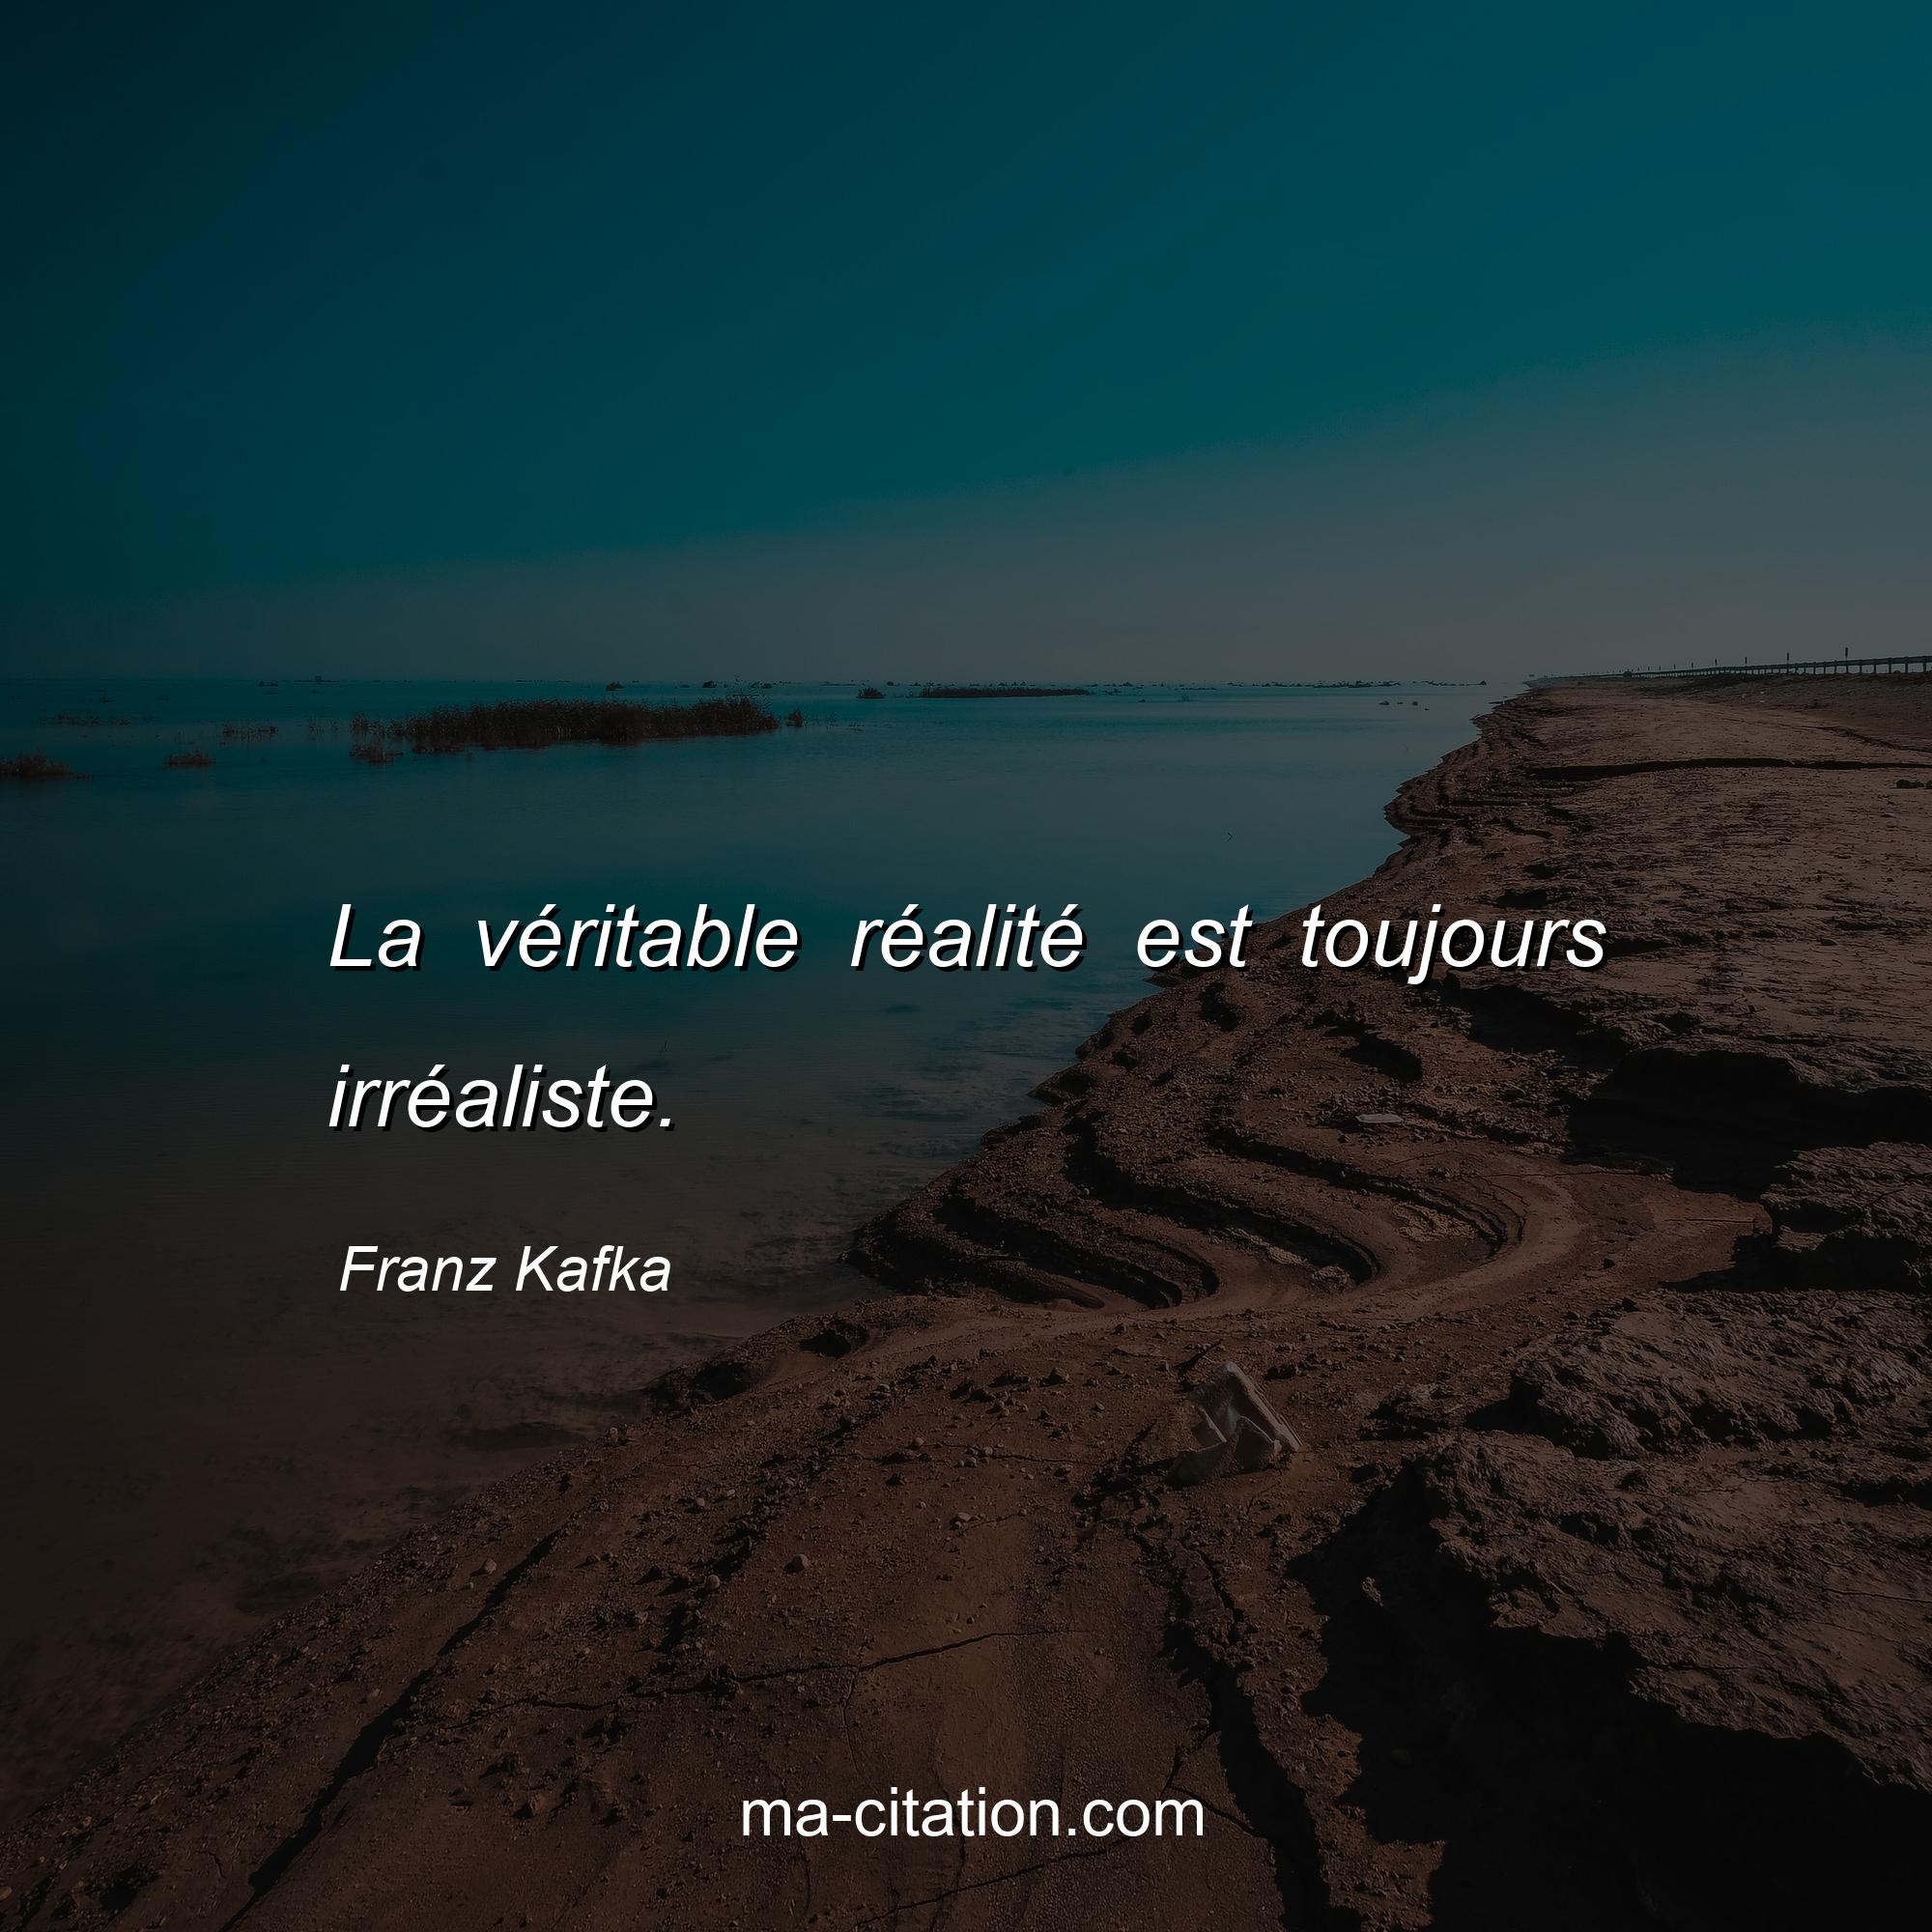 Franz Kafka : La véritable réalité est toujours irréaliste.